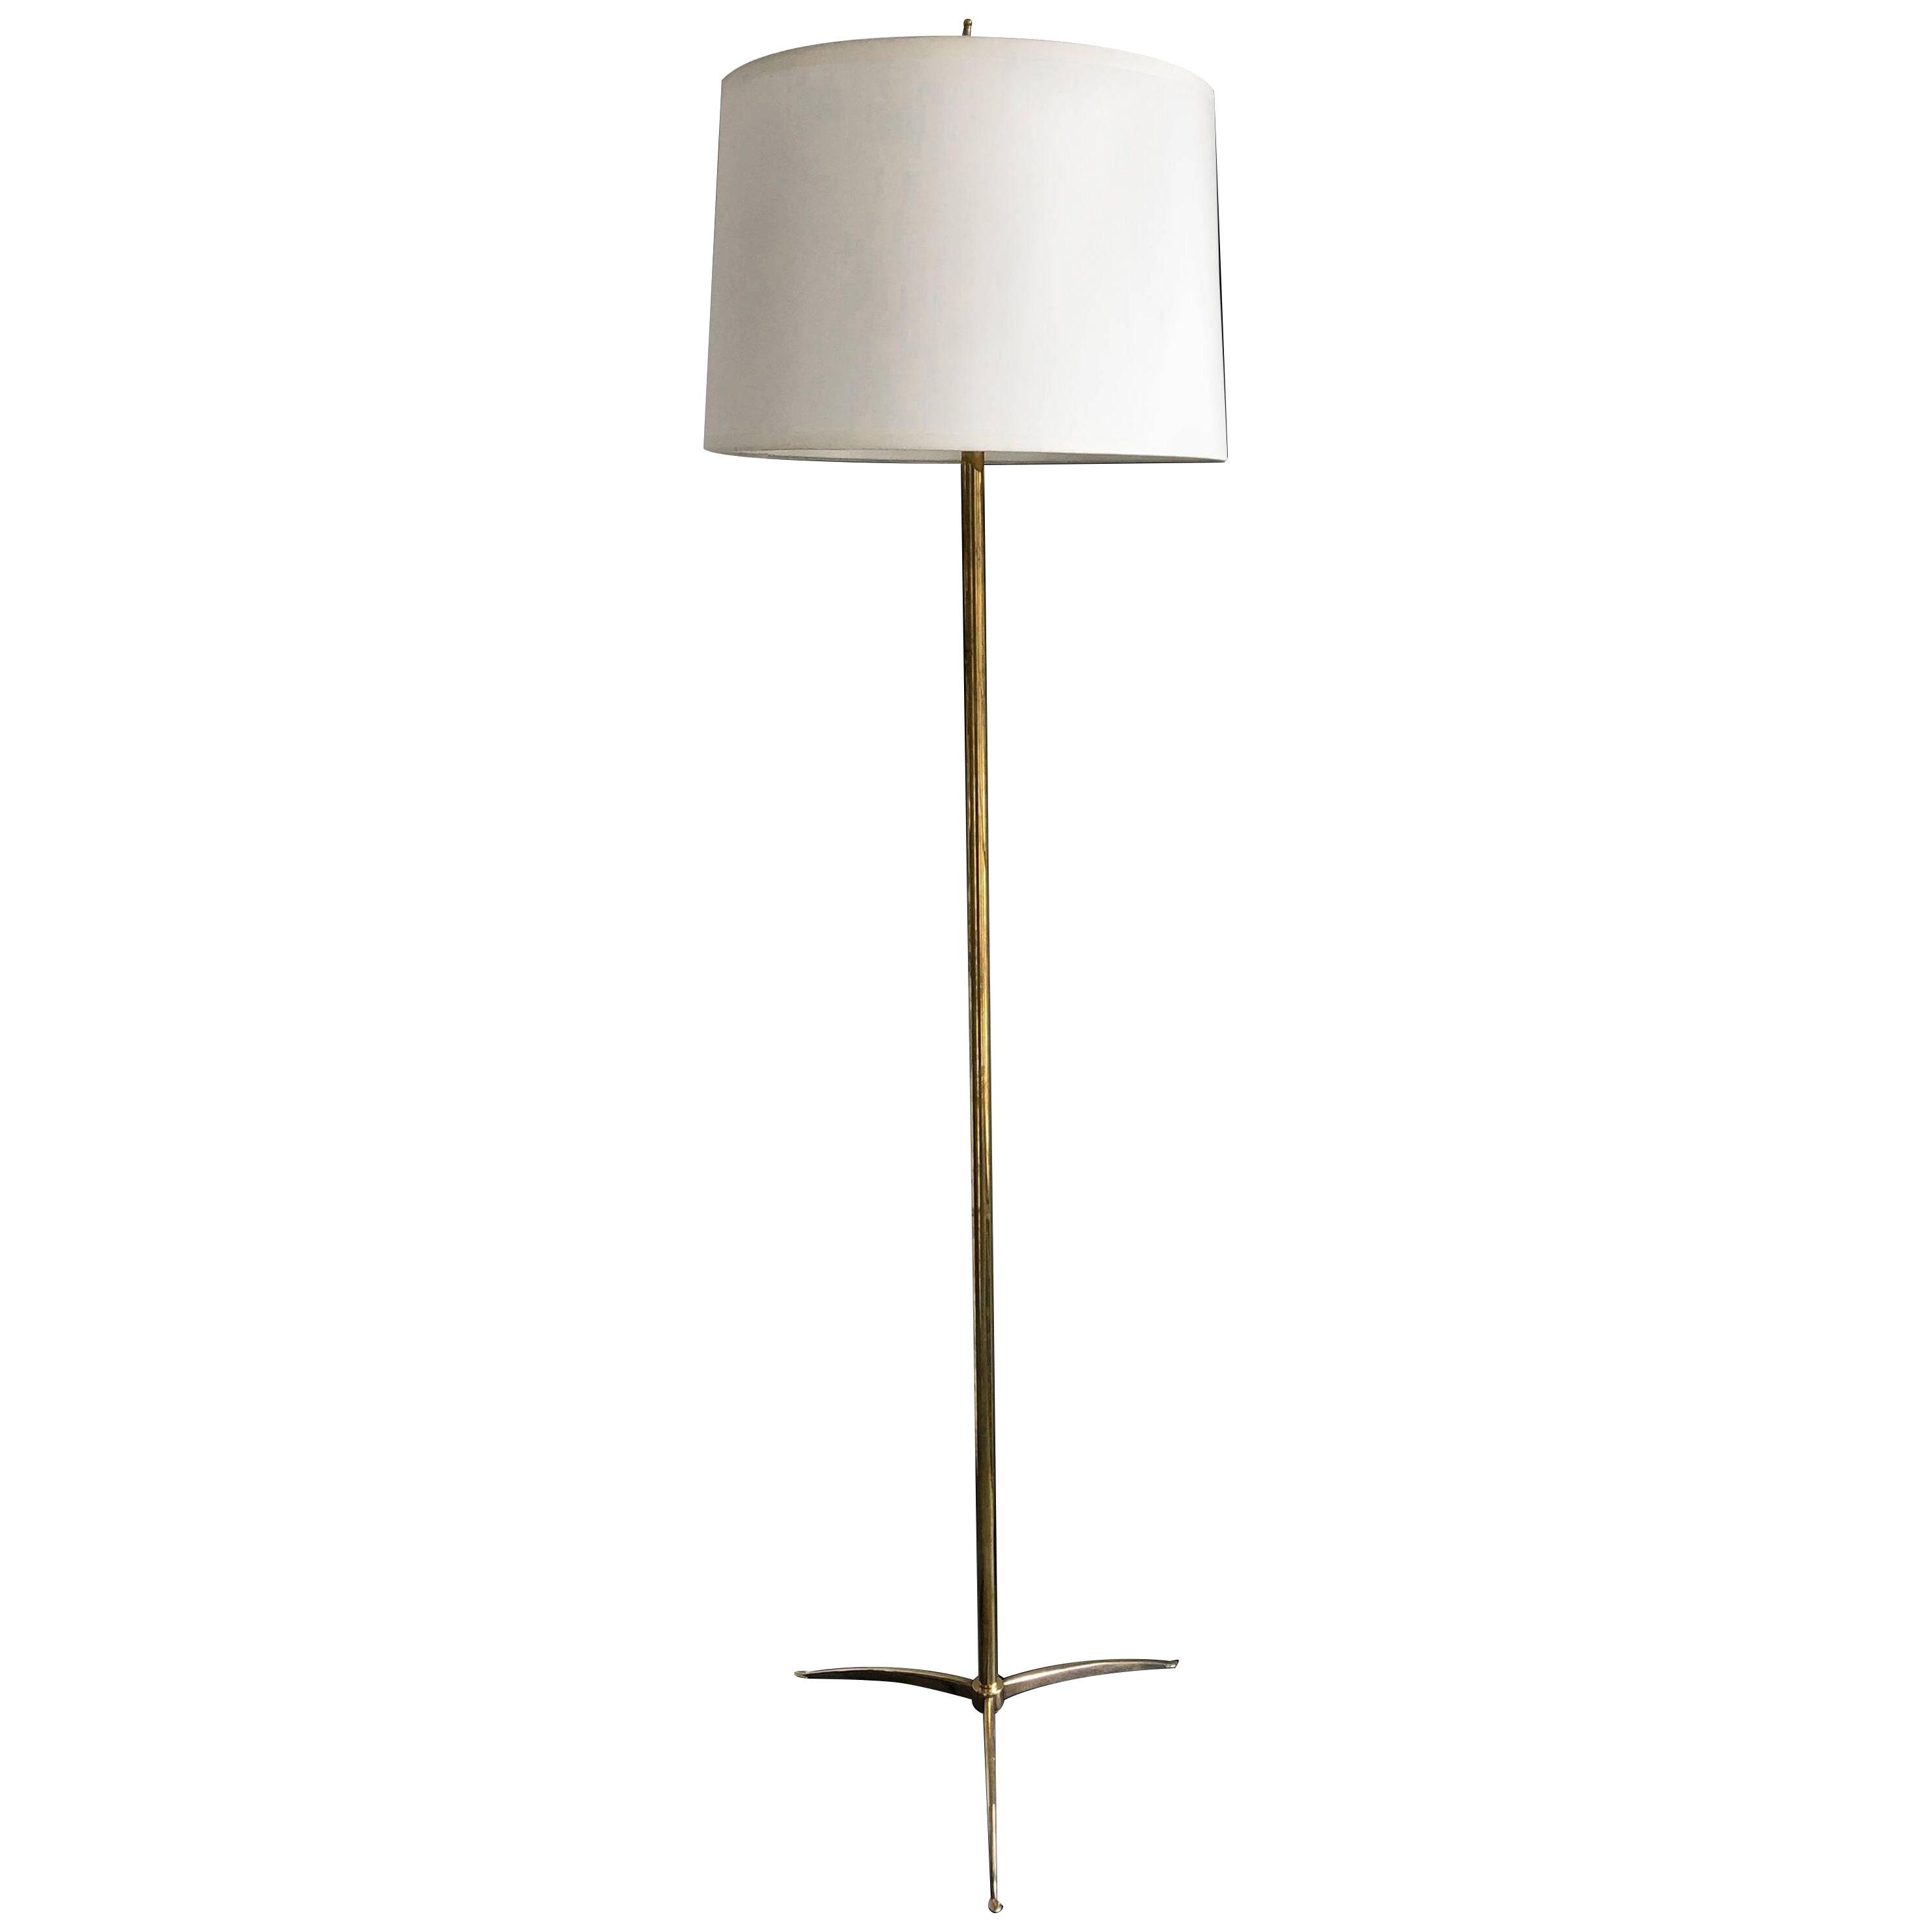 Stilnovo Style Floor Lamp